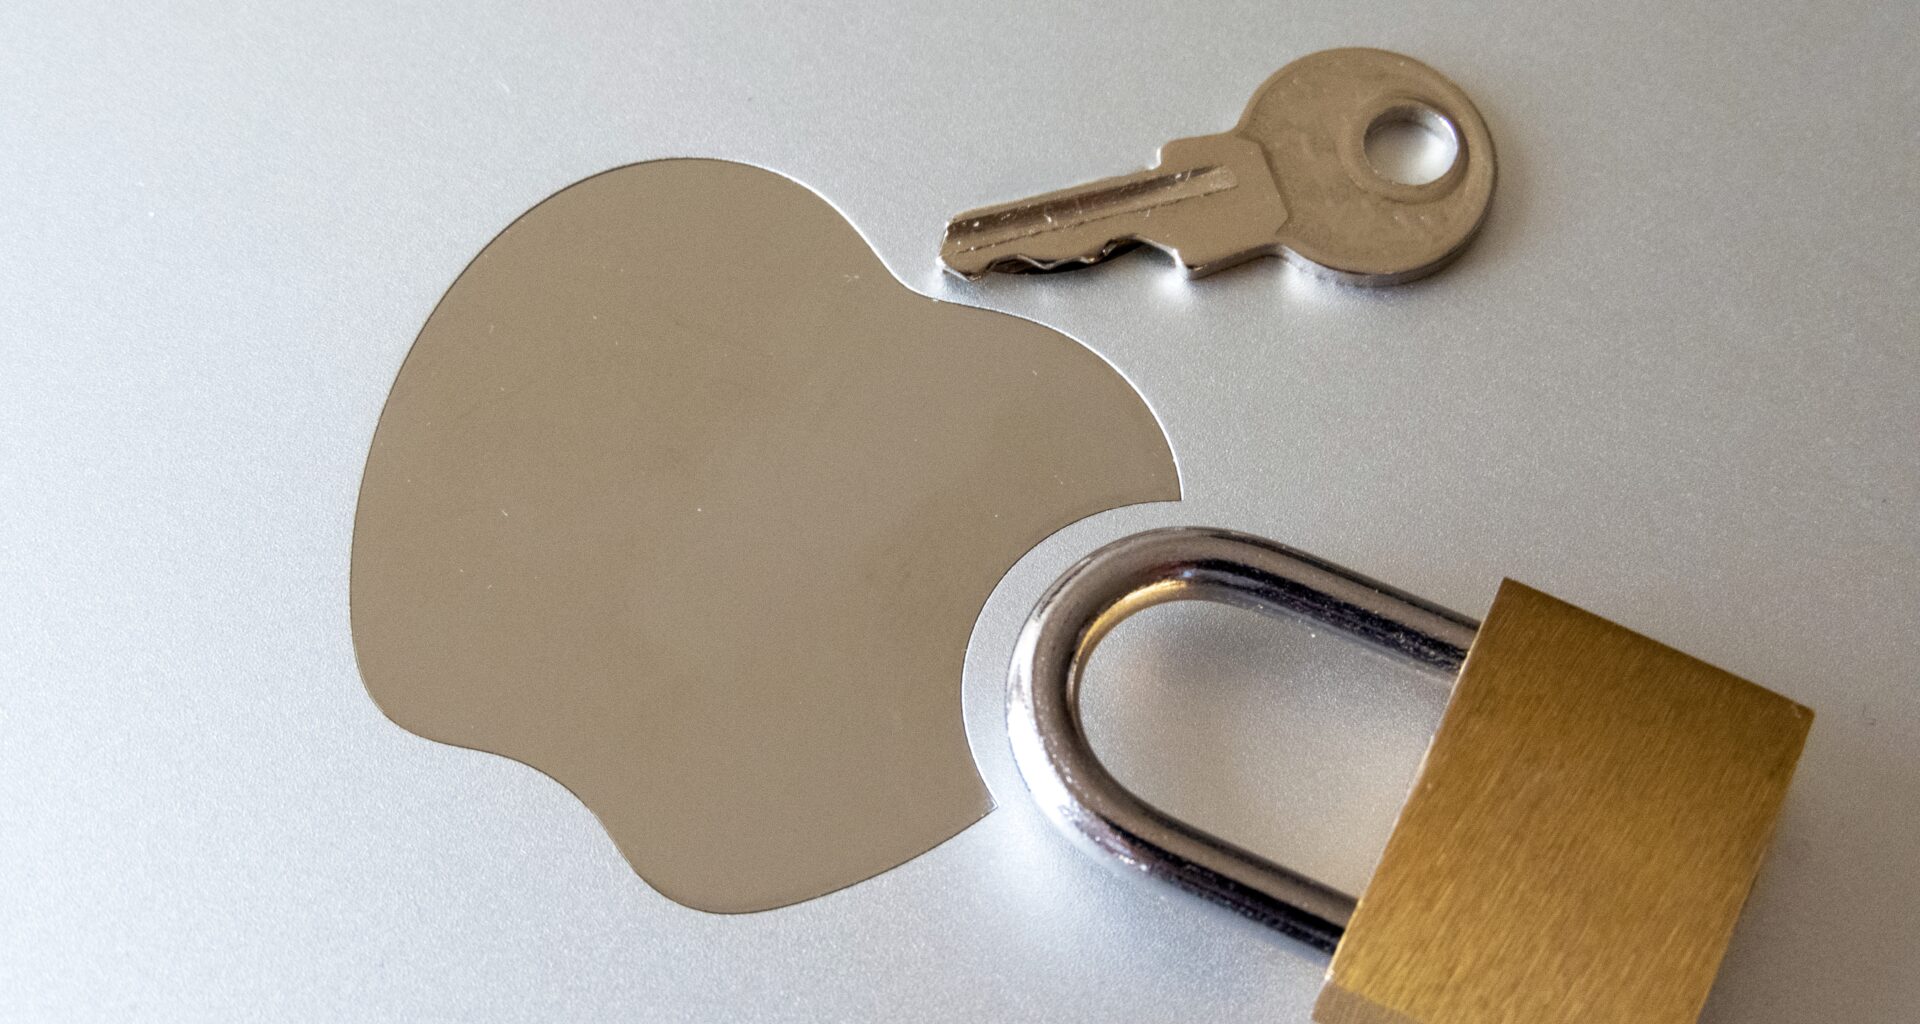 Logo da Apple (maçã) e cadeado com chave